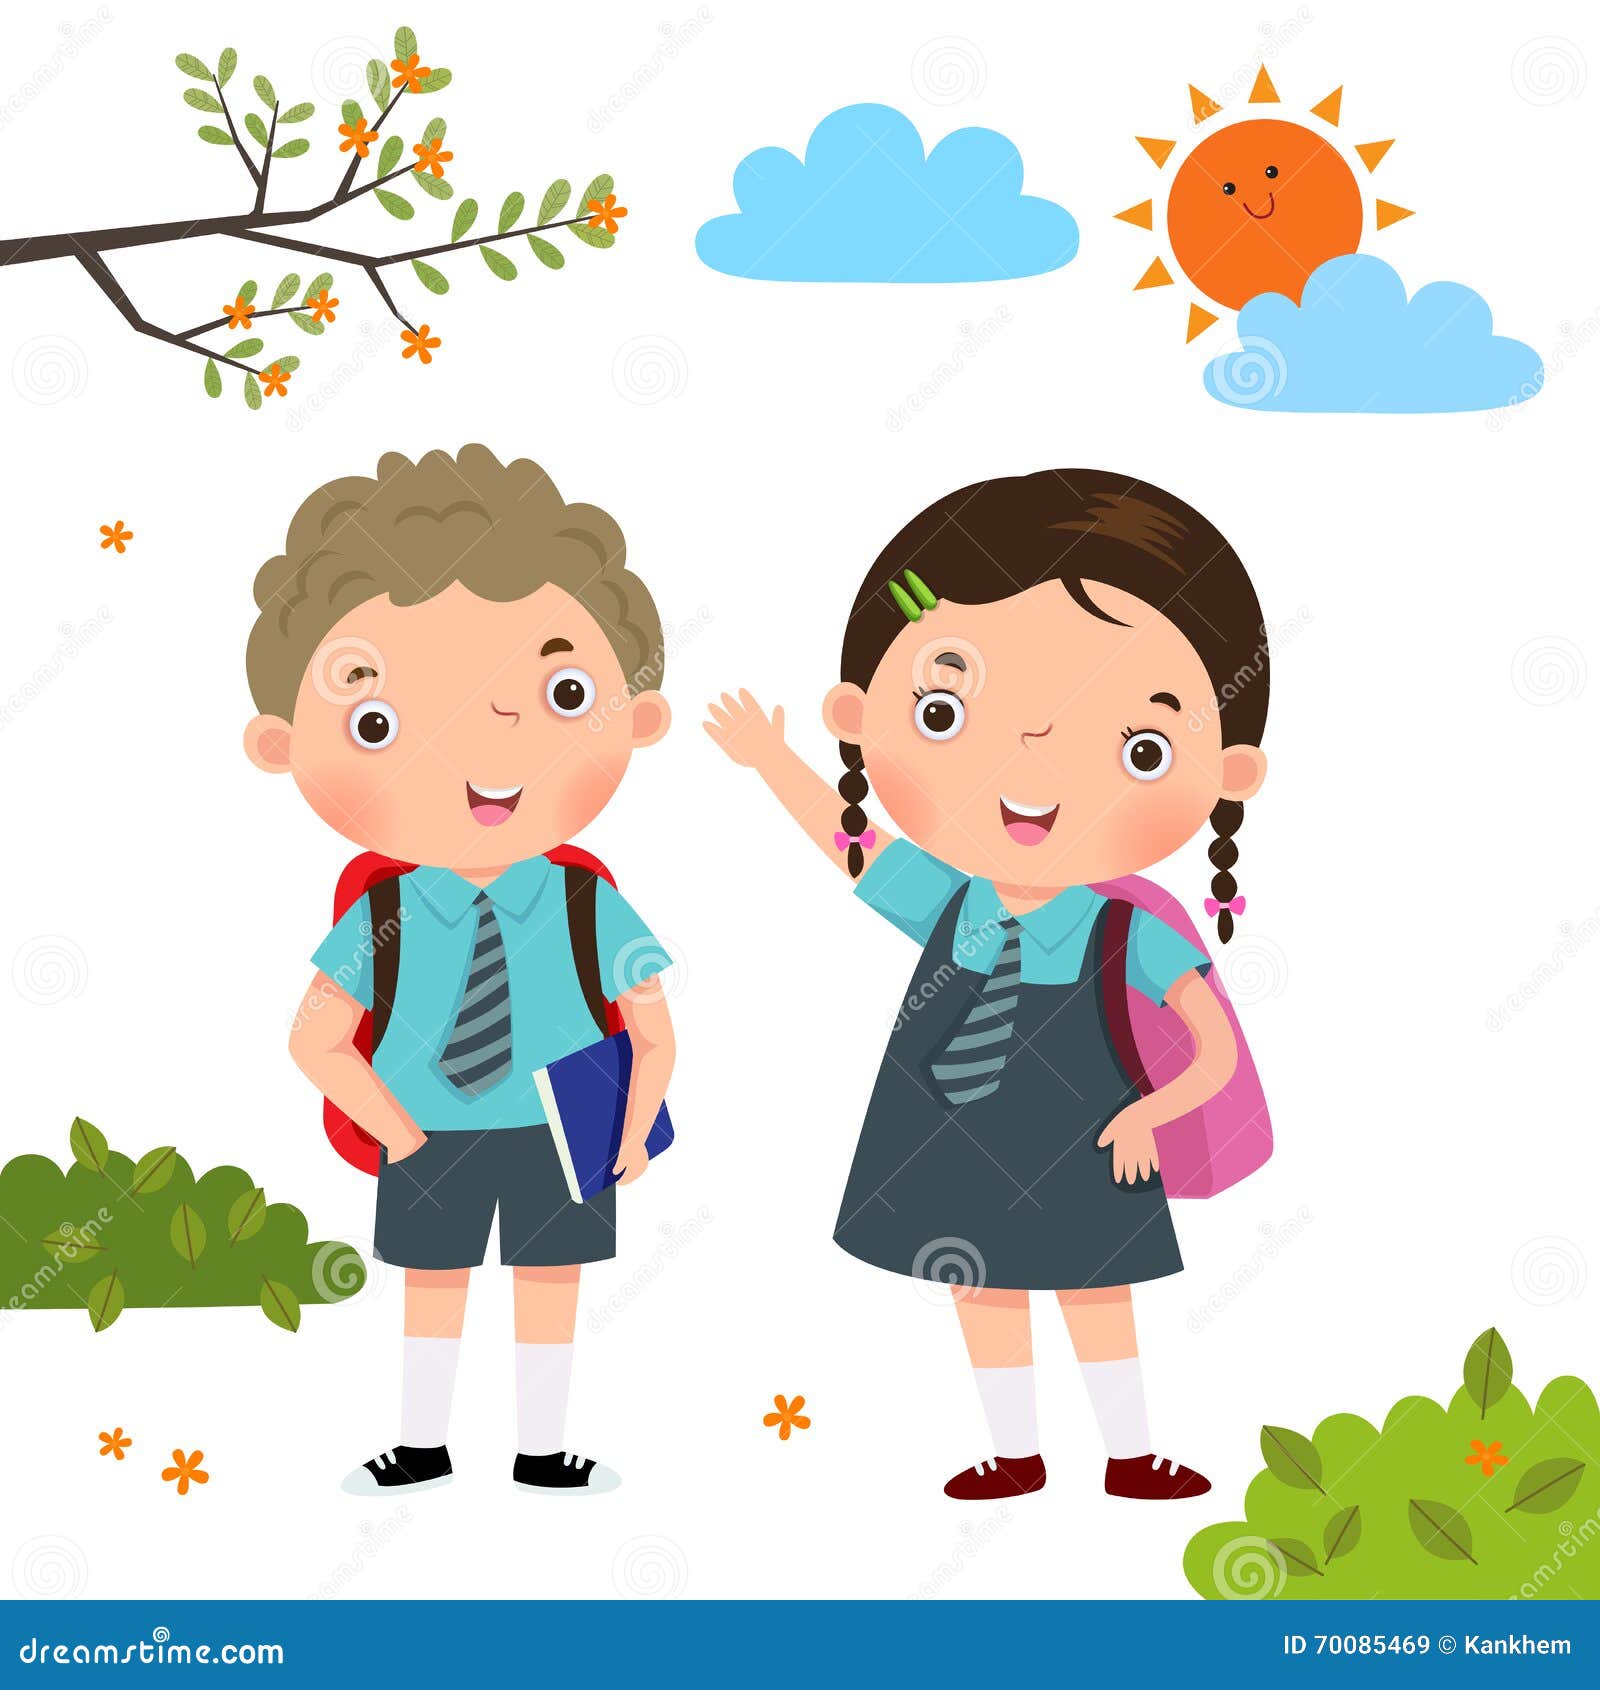 two kids in school uniform going to school